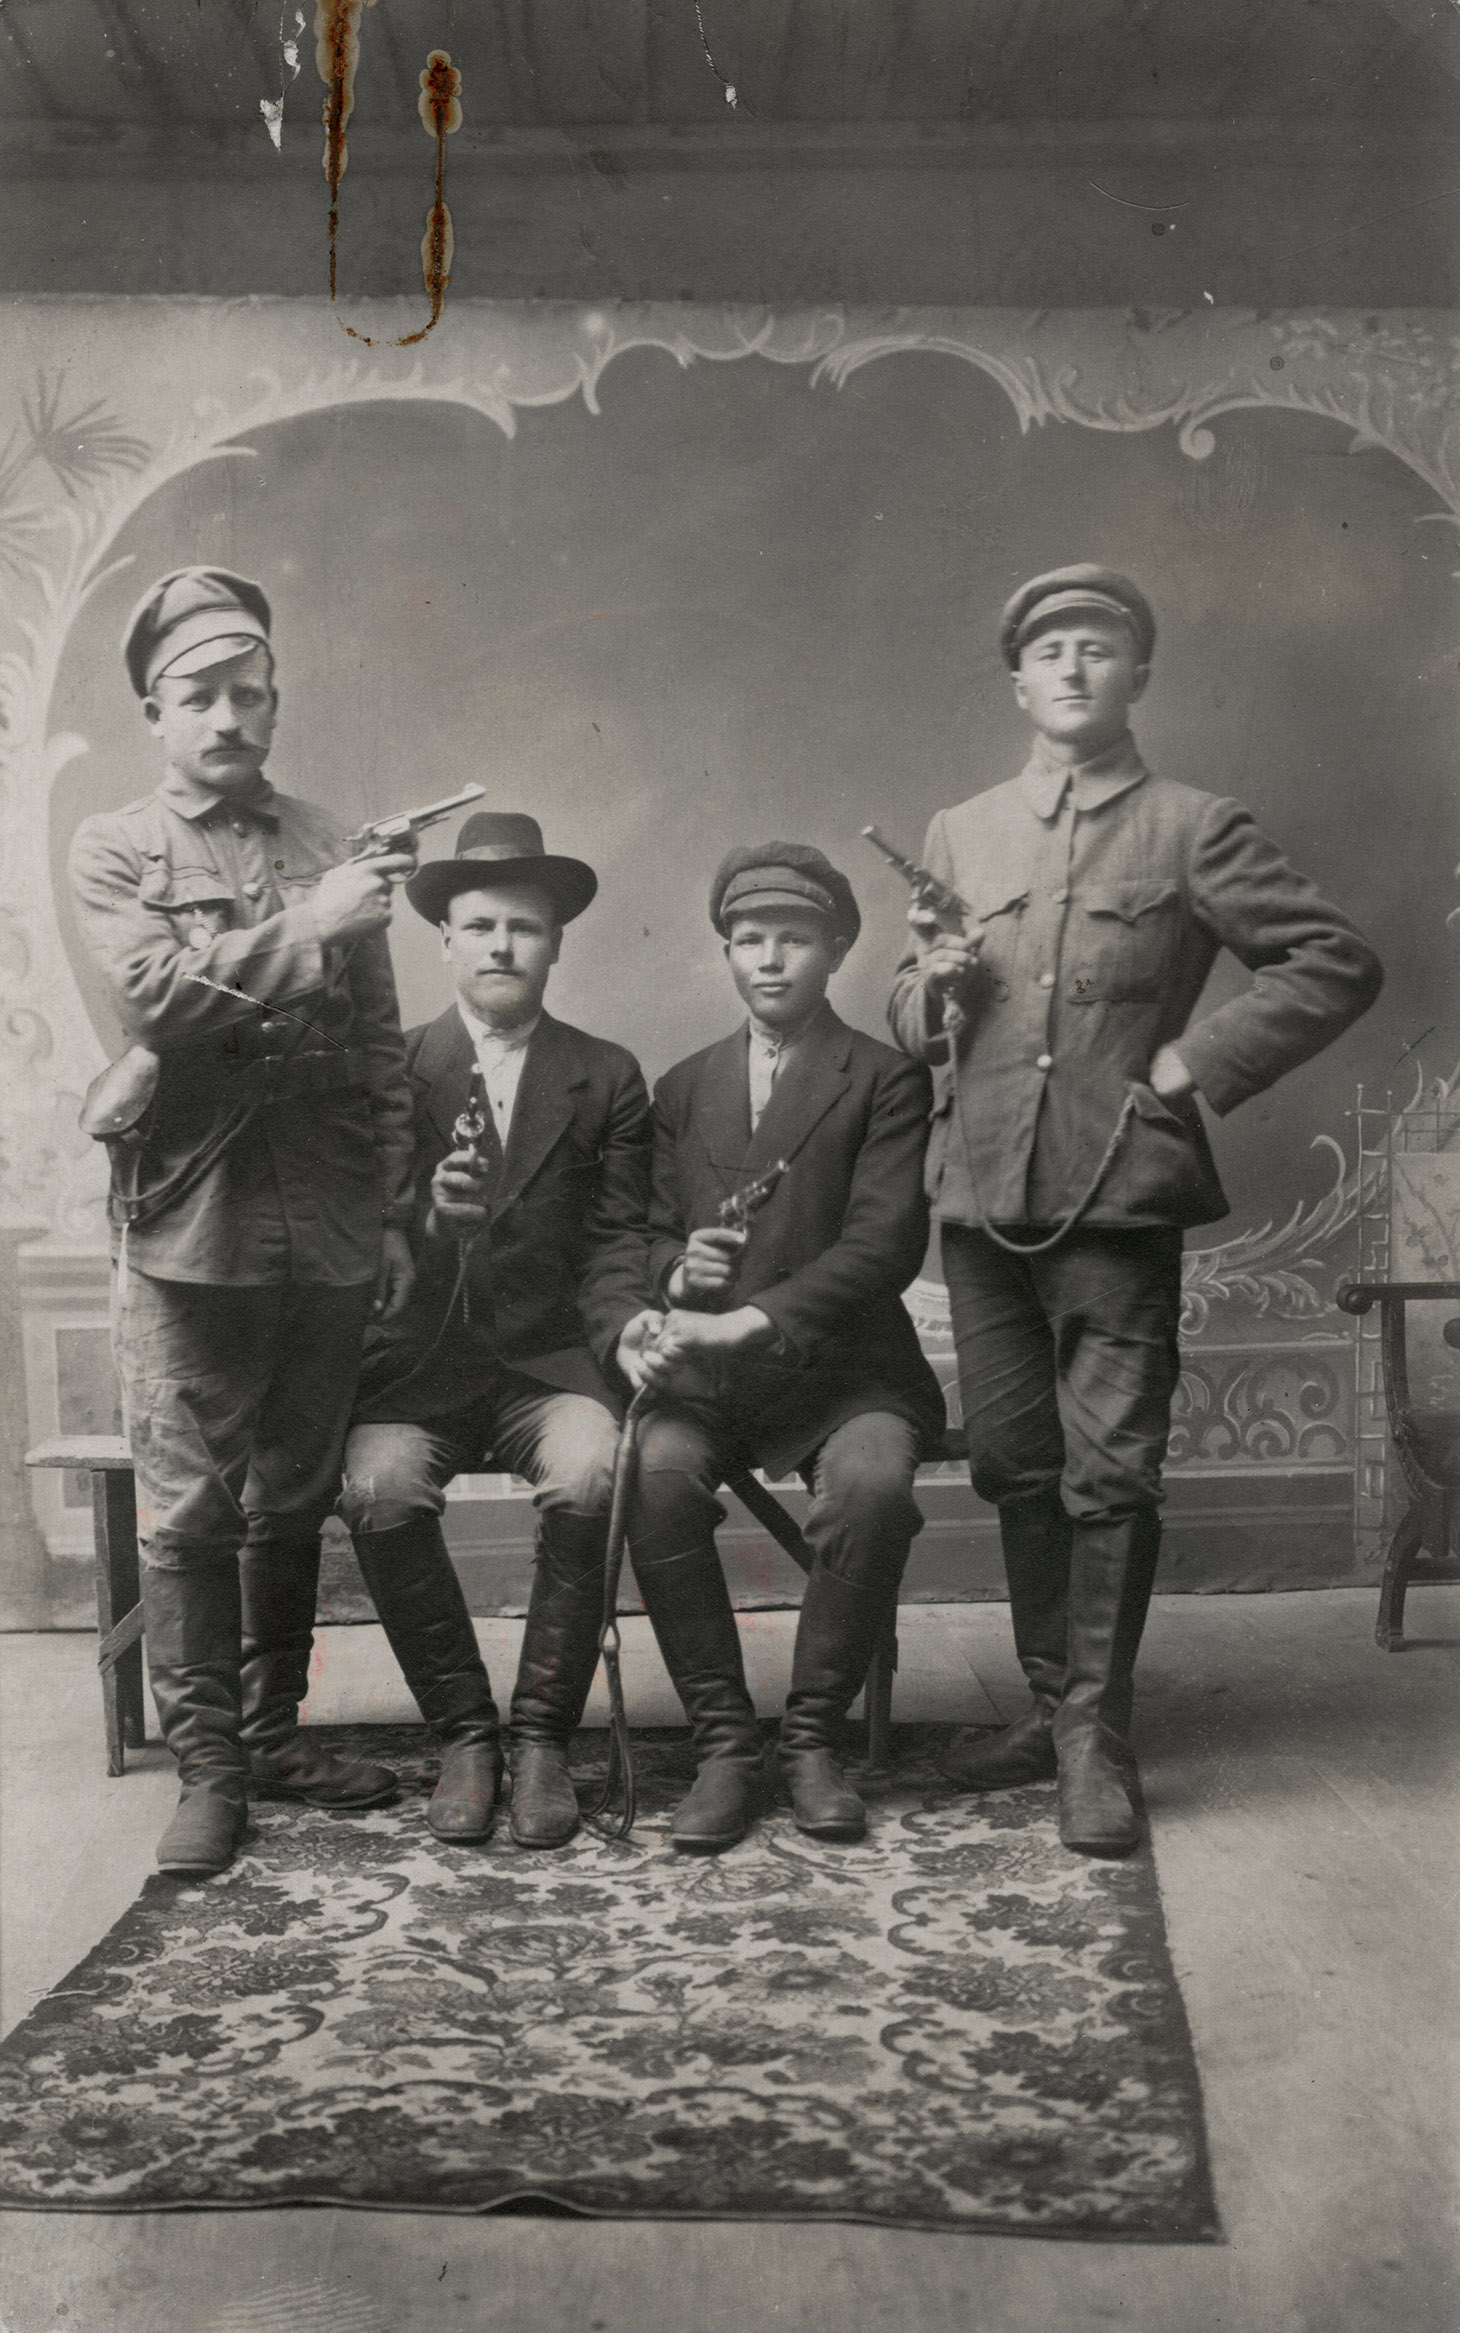 Czarno-biała fotografia studyjna czterech mężczyzn w różnym wieku pozujących z pistoletami. Dwóch z nich, ubranych po cywilnemu, siedzi po środku na prostej, drewnianej ławie, ustawionej na kwiecistym dywanie. Ich lewe dłonie zaciśnięte są razem na elemencie uprzęży końskiej. Po obu ich stronach pozuje, w pozycjach stojących, dwóch mężczyzn w mundurach. Twarze wszystkich zwrócone są w stronę widza. Broń, z której celują wymierzona jest w przypadkowych kierunkach. W tle namalowana na ścianie rama w postaci krętych, fantazyjnych linii. 